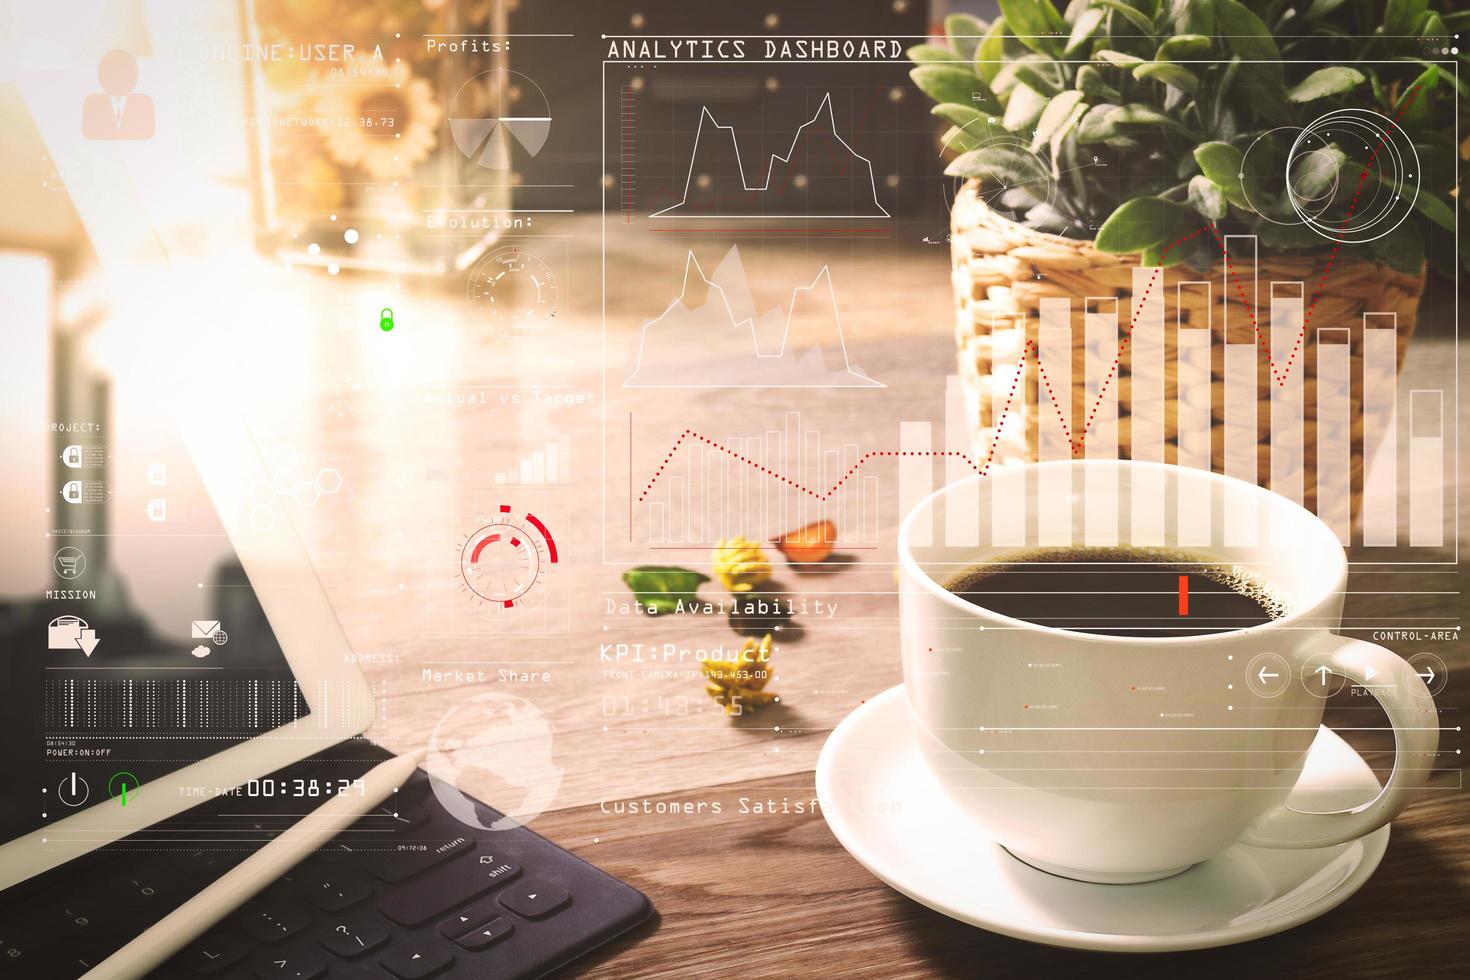 tazza di caffè e tastiera digitale dock da tavolo intelligente, vaso di erbe aromatiche, penna stilo sul tavolo di legno, effetto filtro foto